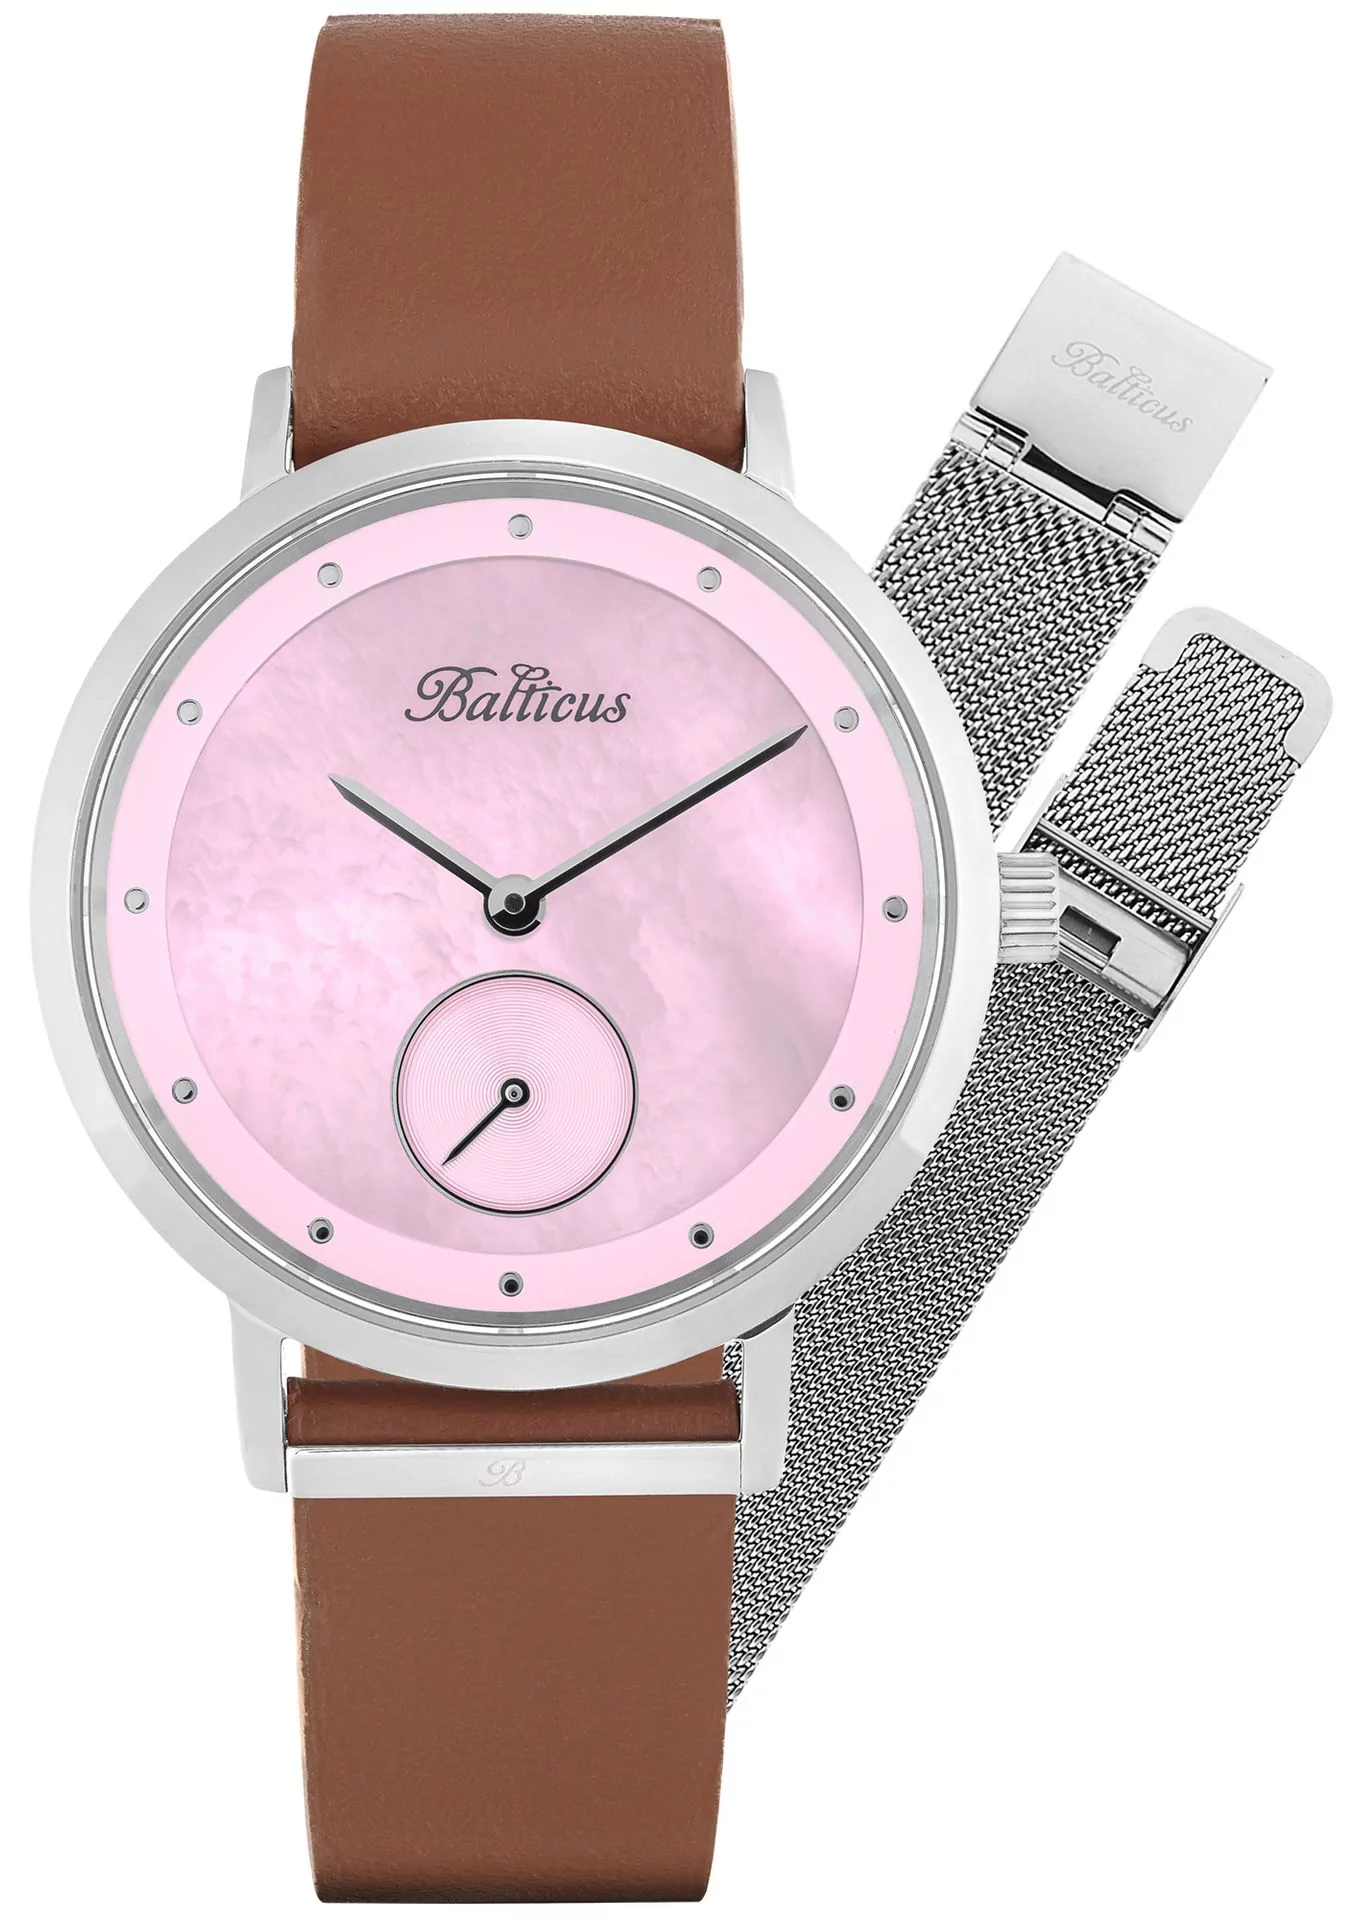 Zegarek Balticus BLT-BALNSSP-P New Sky Silver Pink Pearl - dodatkowa bransoleta - Natychmiastowa WYSYŁKA 0zł (DHL DPD INPOST) | Grawer 1zł | Zwrot 100 dni